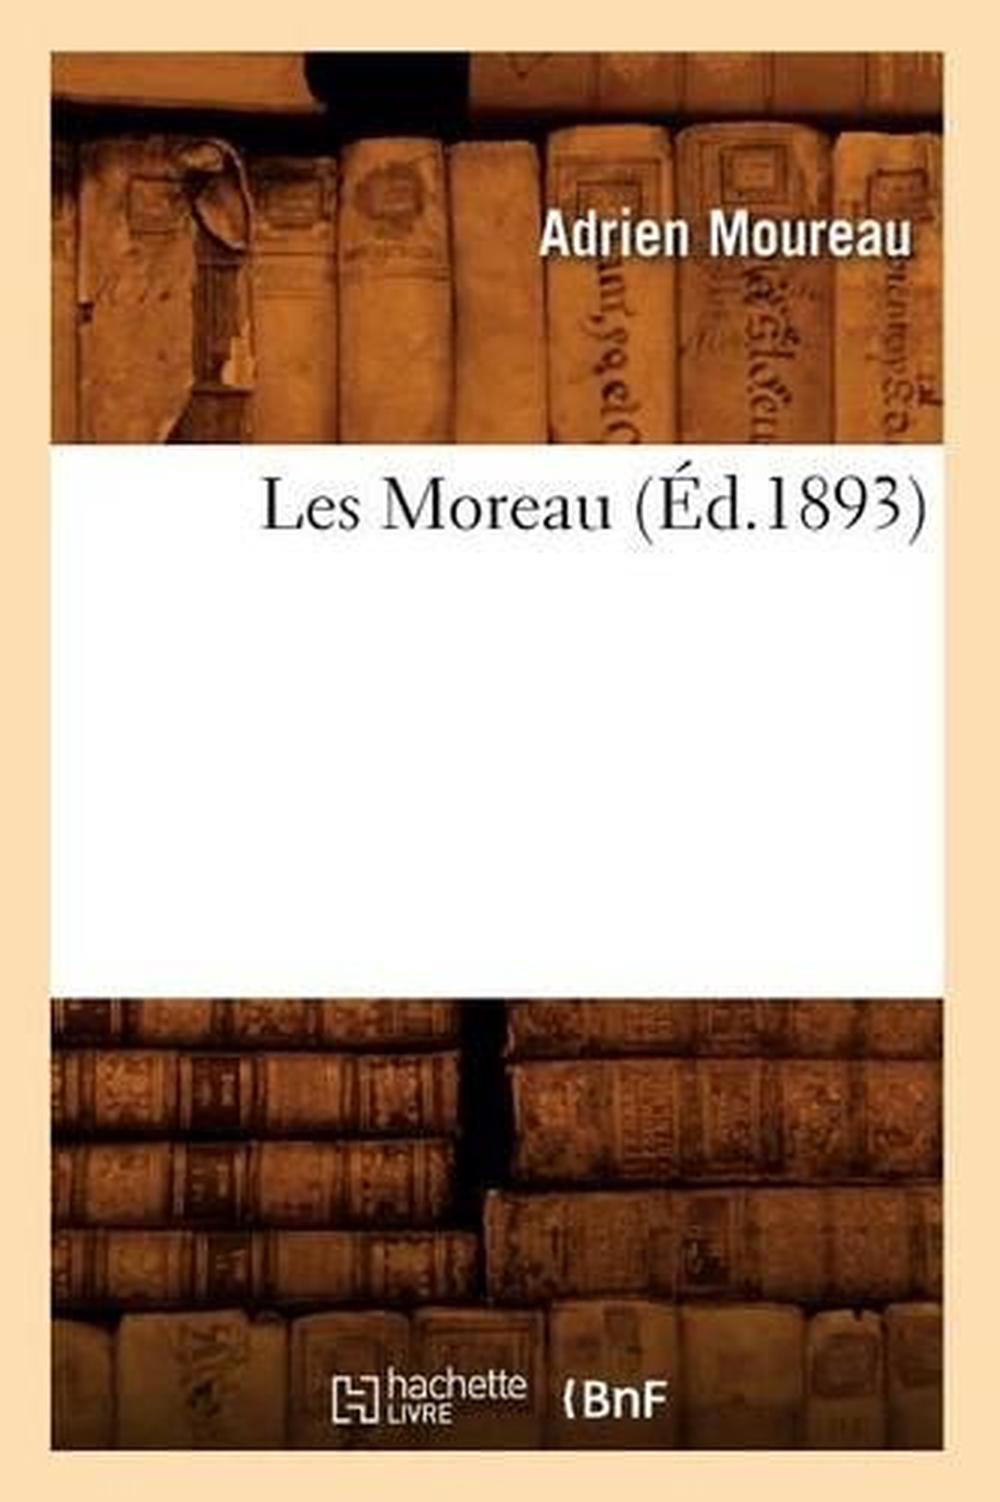 Dissertation of moreau de mautour